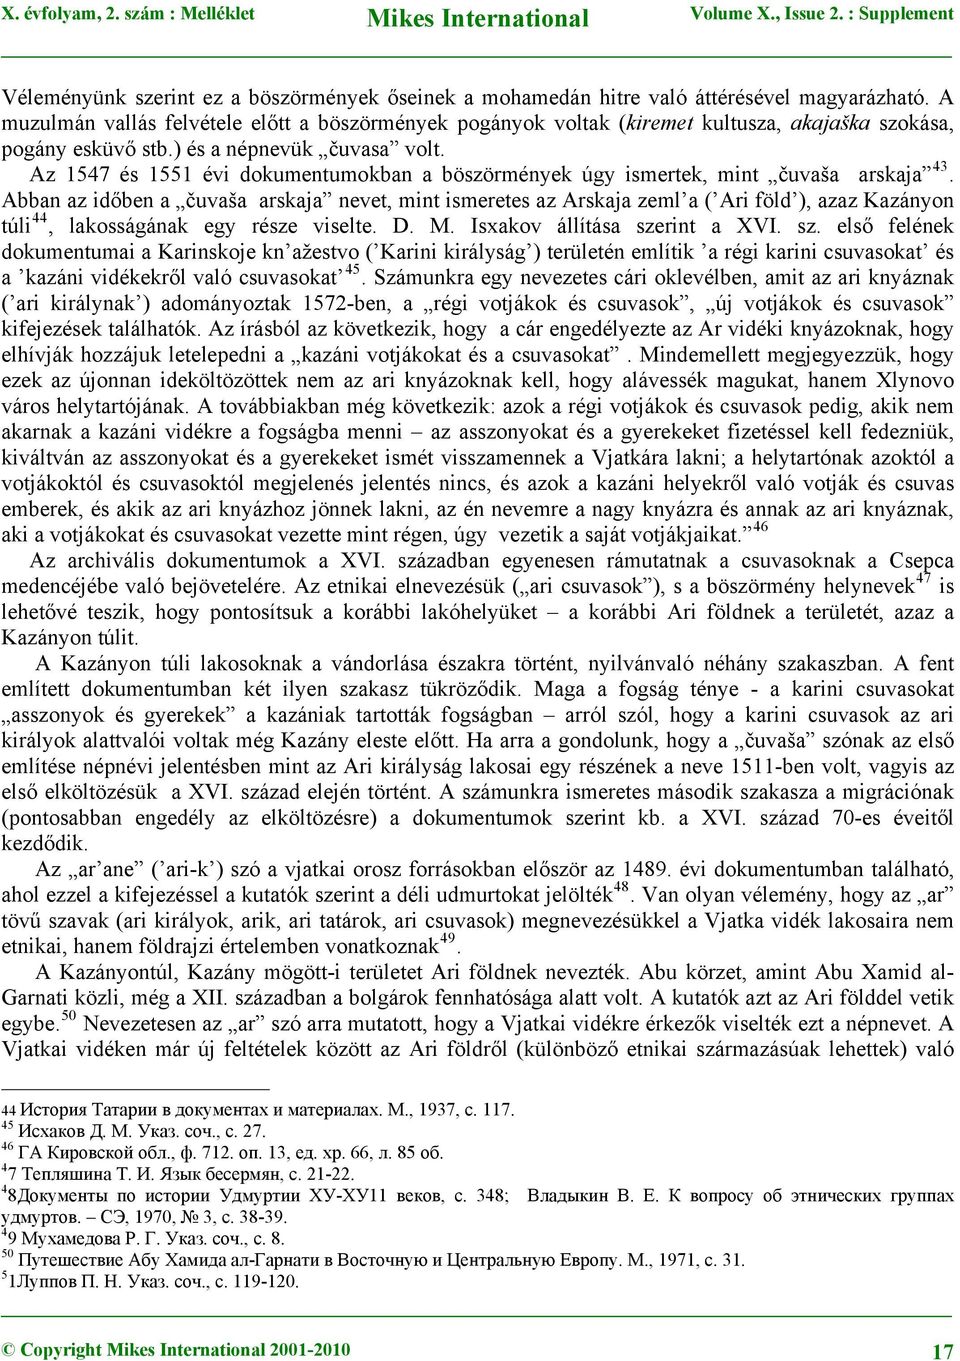 Az 1547 és 1551 évi dokumentumokban a böszörmények úgy ismertek, mint čuvaša arskaja 43.